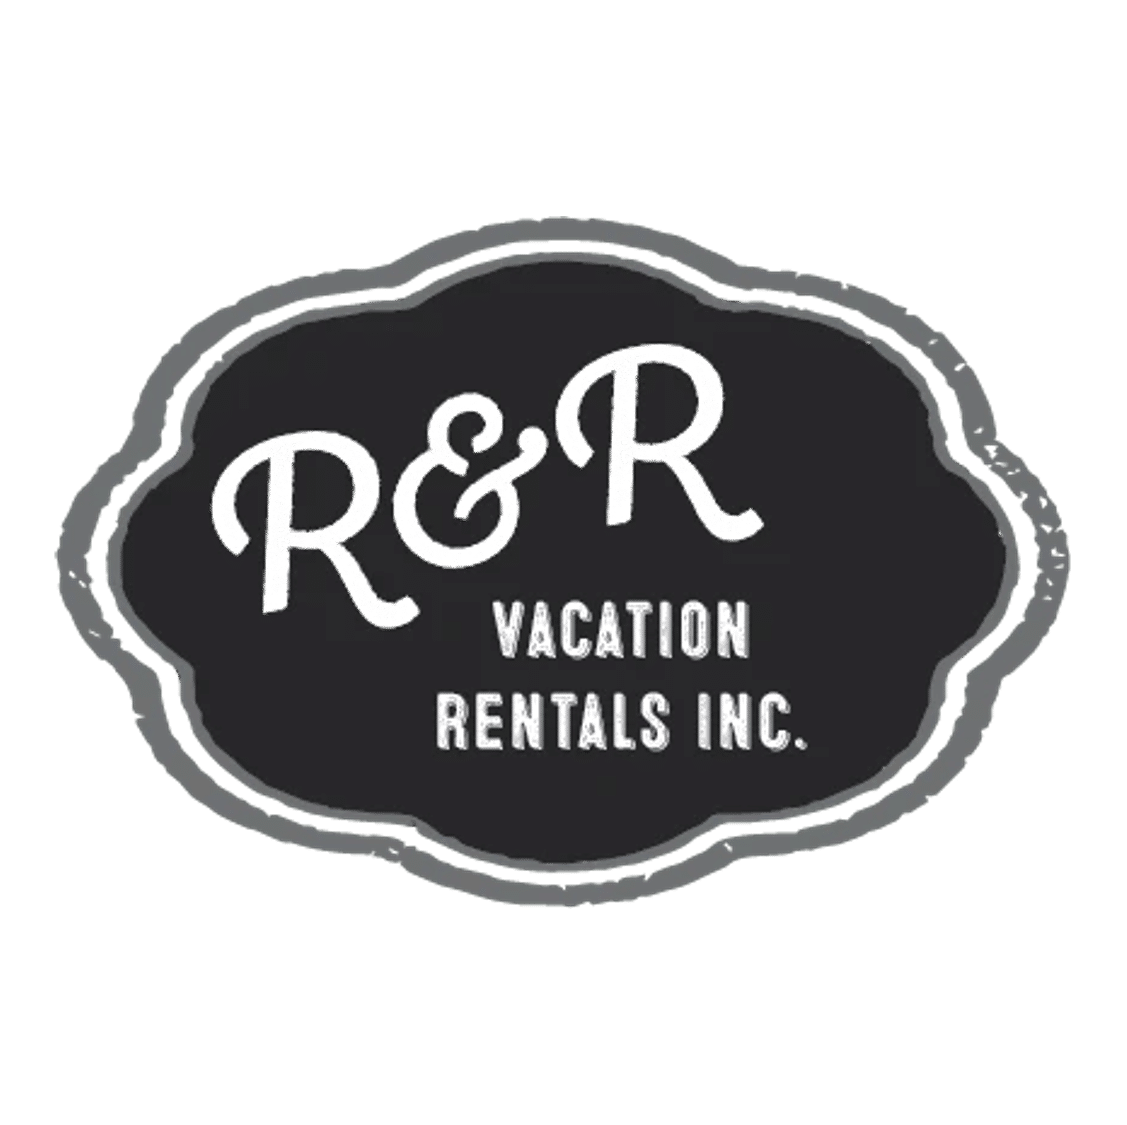 R & R Vacation Rentals, Inc.